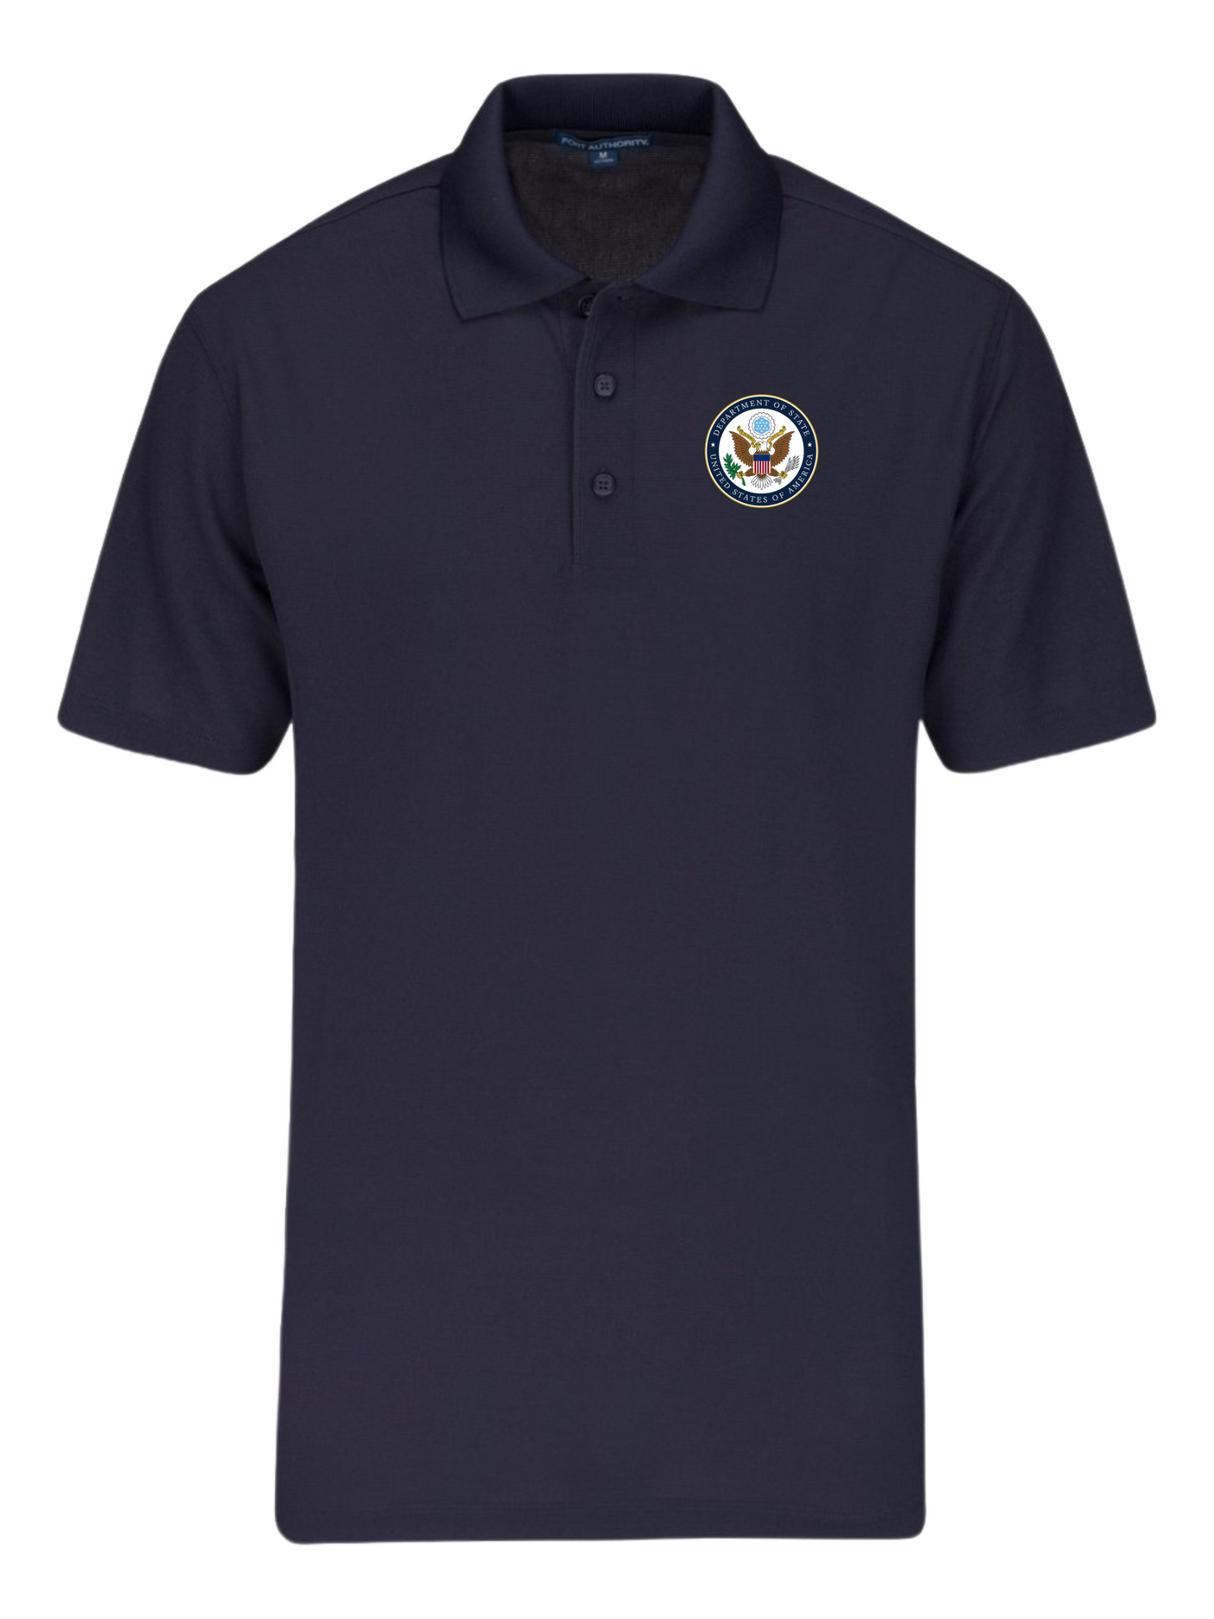 DOS Polo Shirt - Men's Short Sleeve - FEDS Apparel